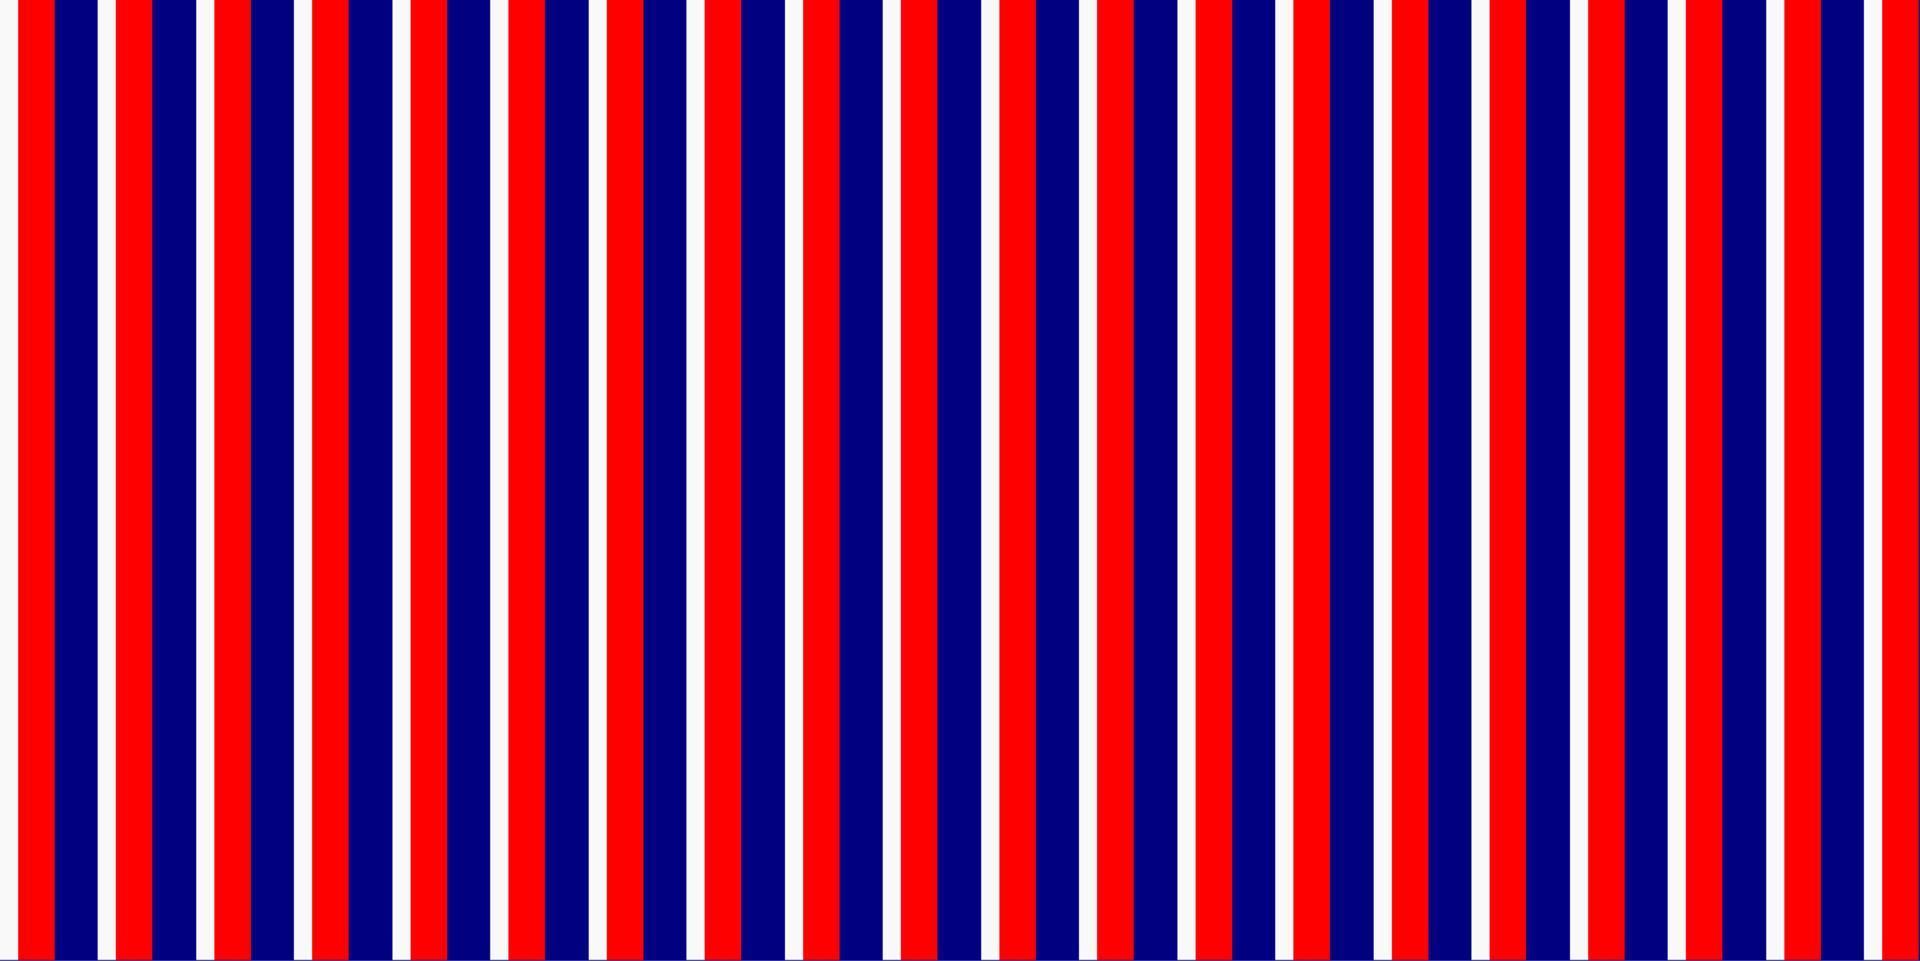 Vektor entworfen, weiße und blaue Farbe des geometrischen nahtlosen Musters des vertikalen Streifens. glücklicher unabhängigkeitstag am 4. juli. vereinigte staaten von amerika, frankreich, thailand, neuseeland, niederlande, briten